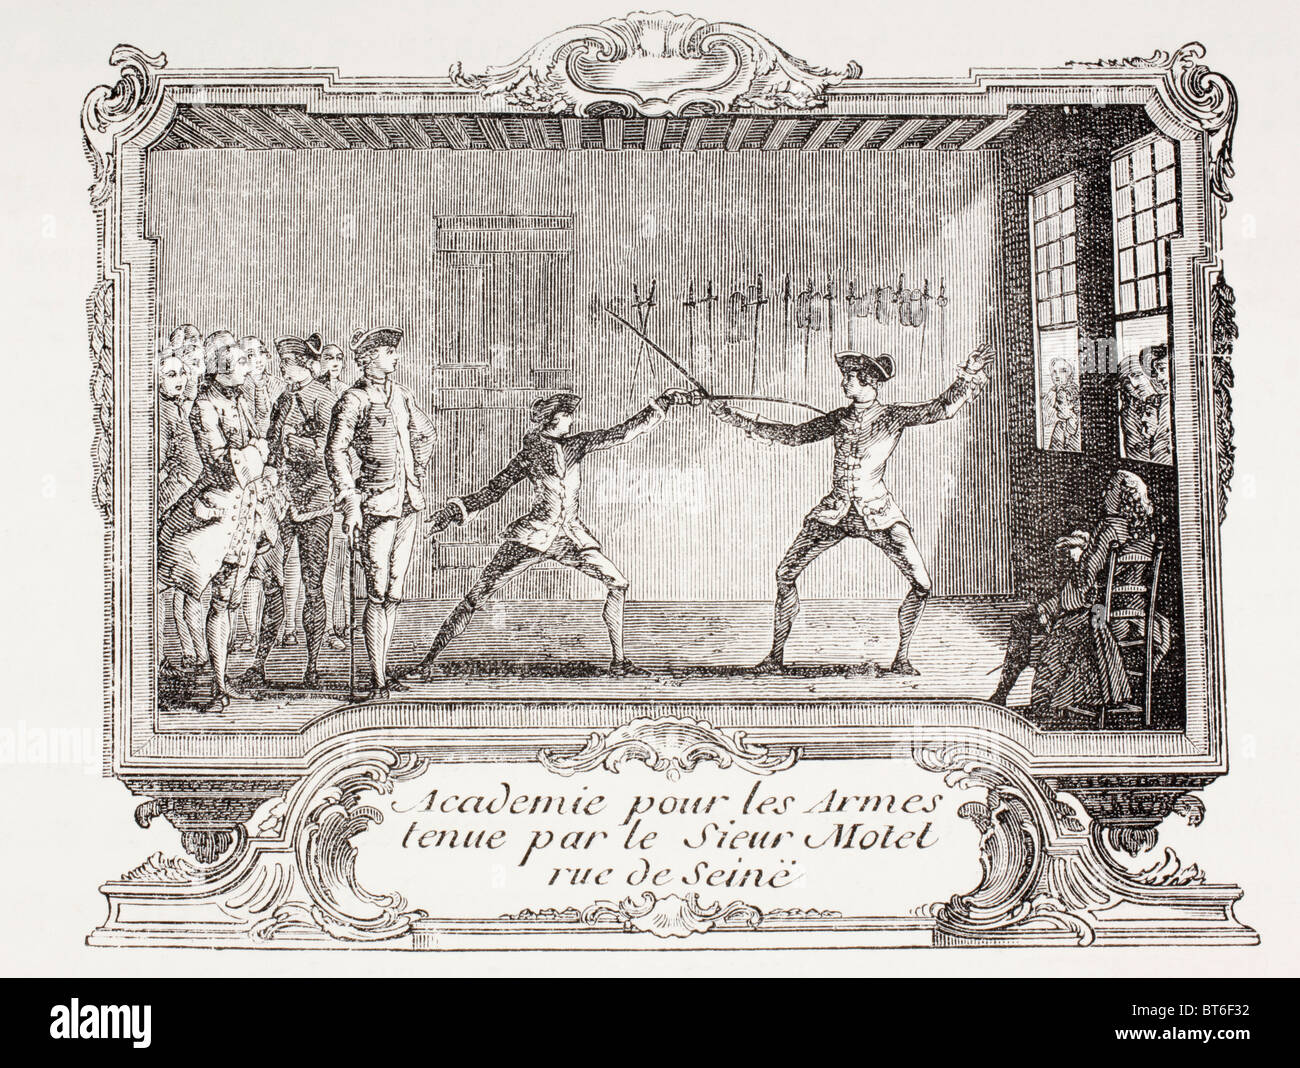 Une académie d'escrime à Paris 18ème siècle. Banque D'Images